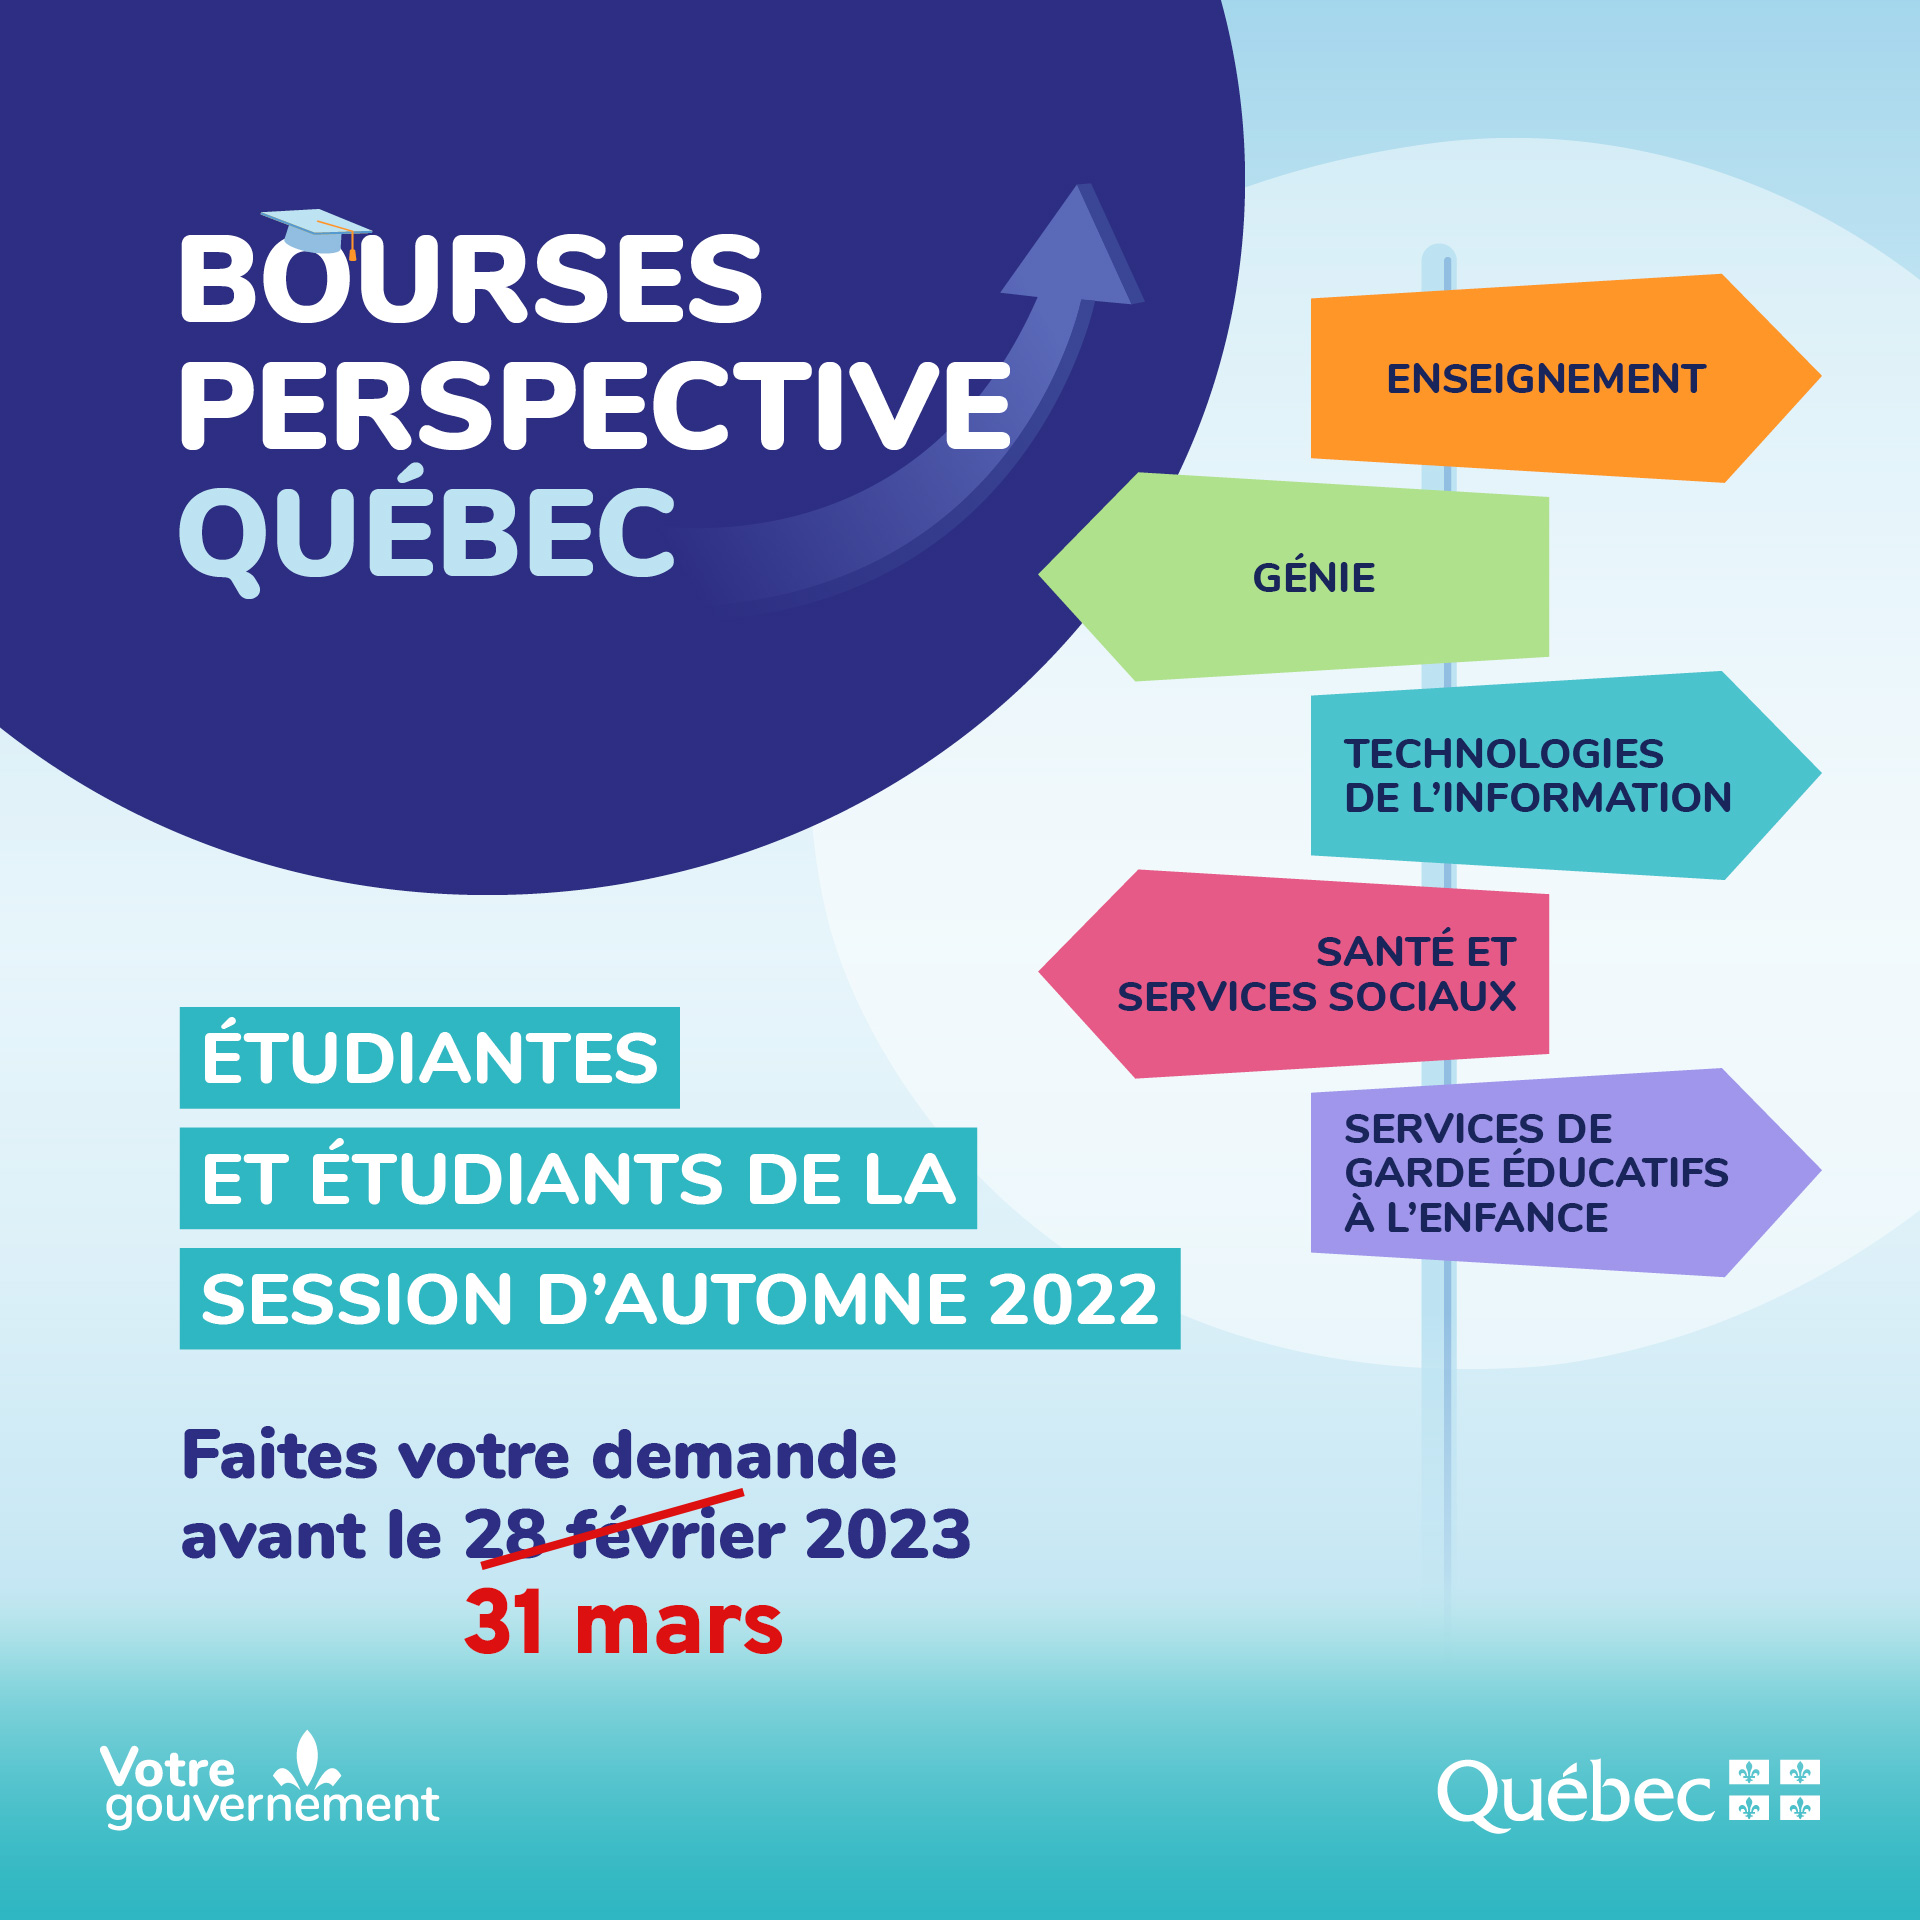 Étudiantes et étudiants de la session d'automne 2022, faites votre demande pour l'une des Bourses Perspective Québec avant le 31 mars 2023!